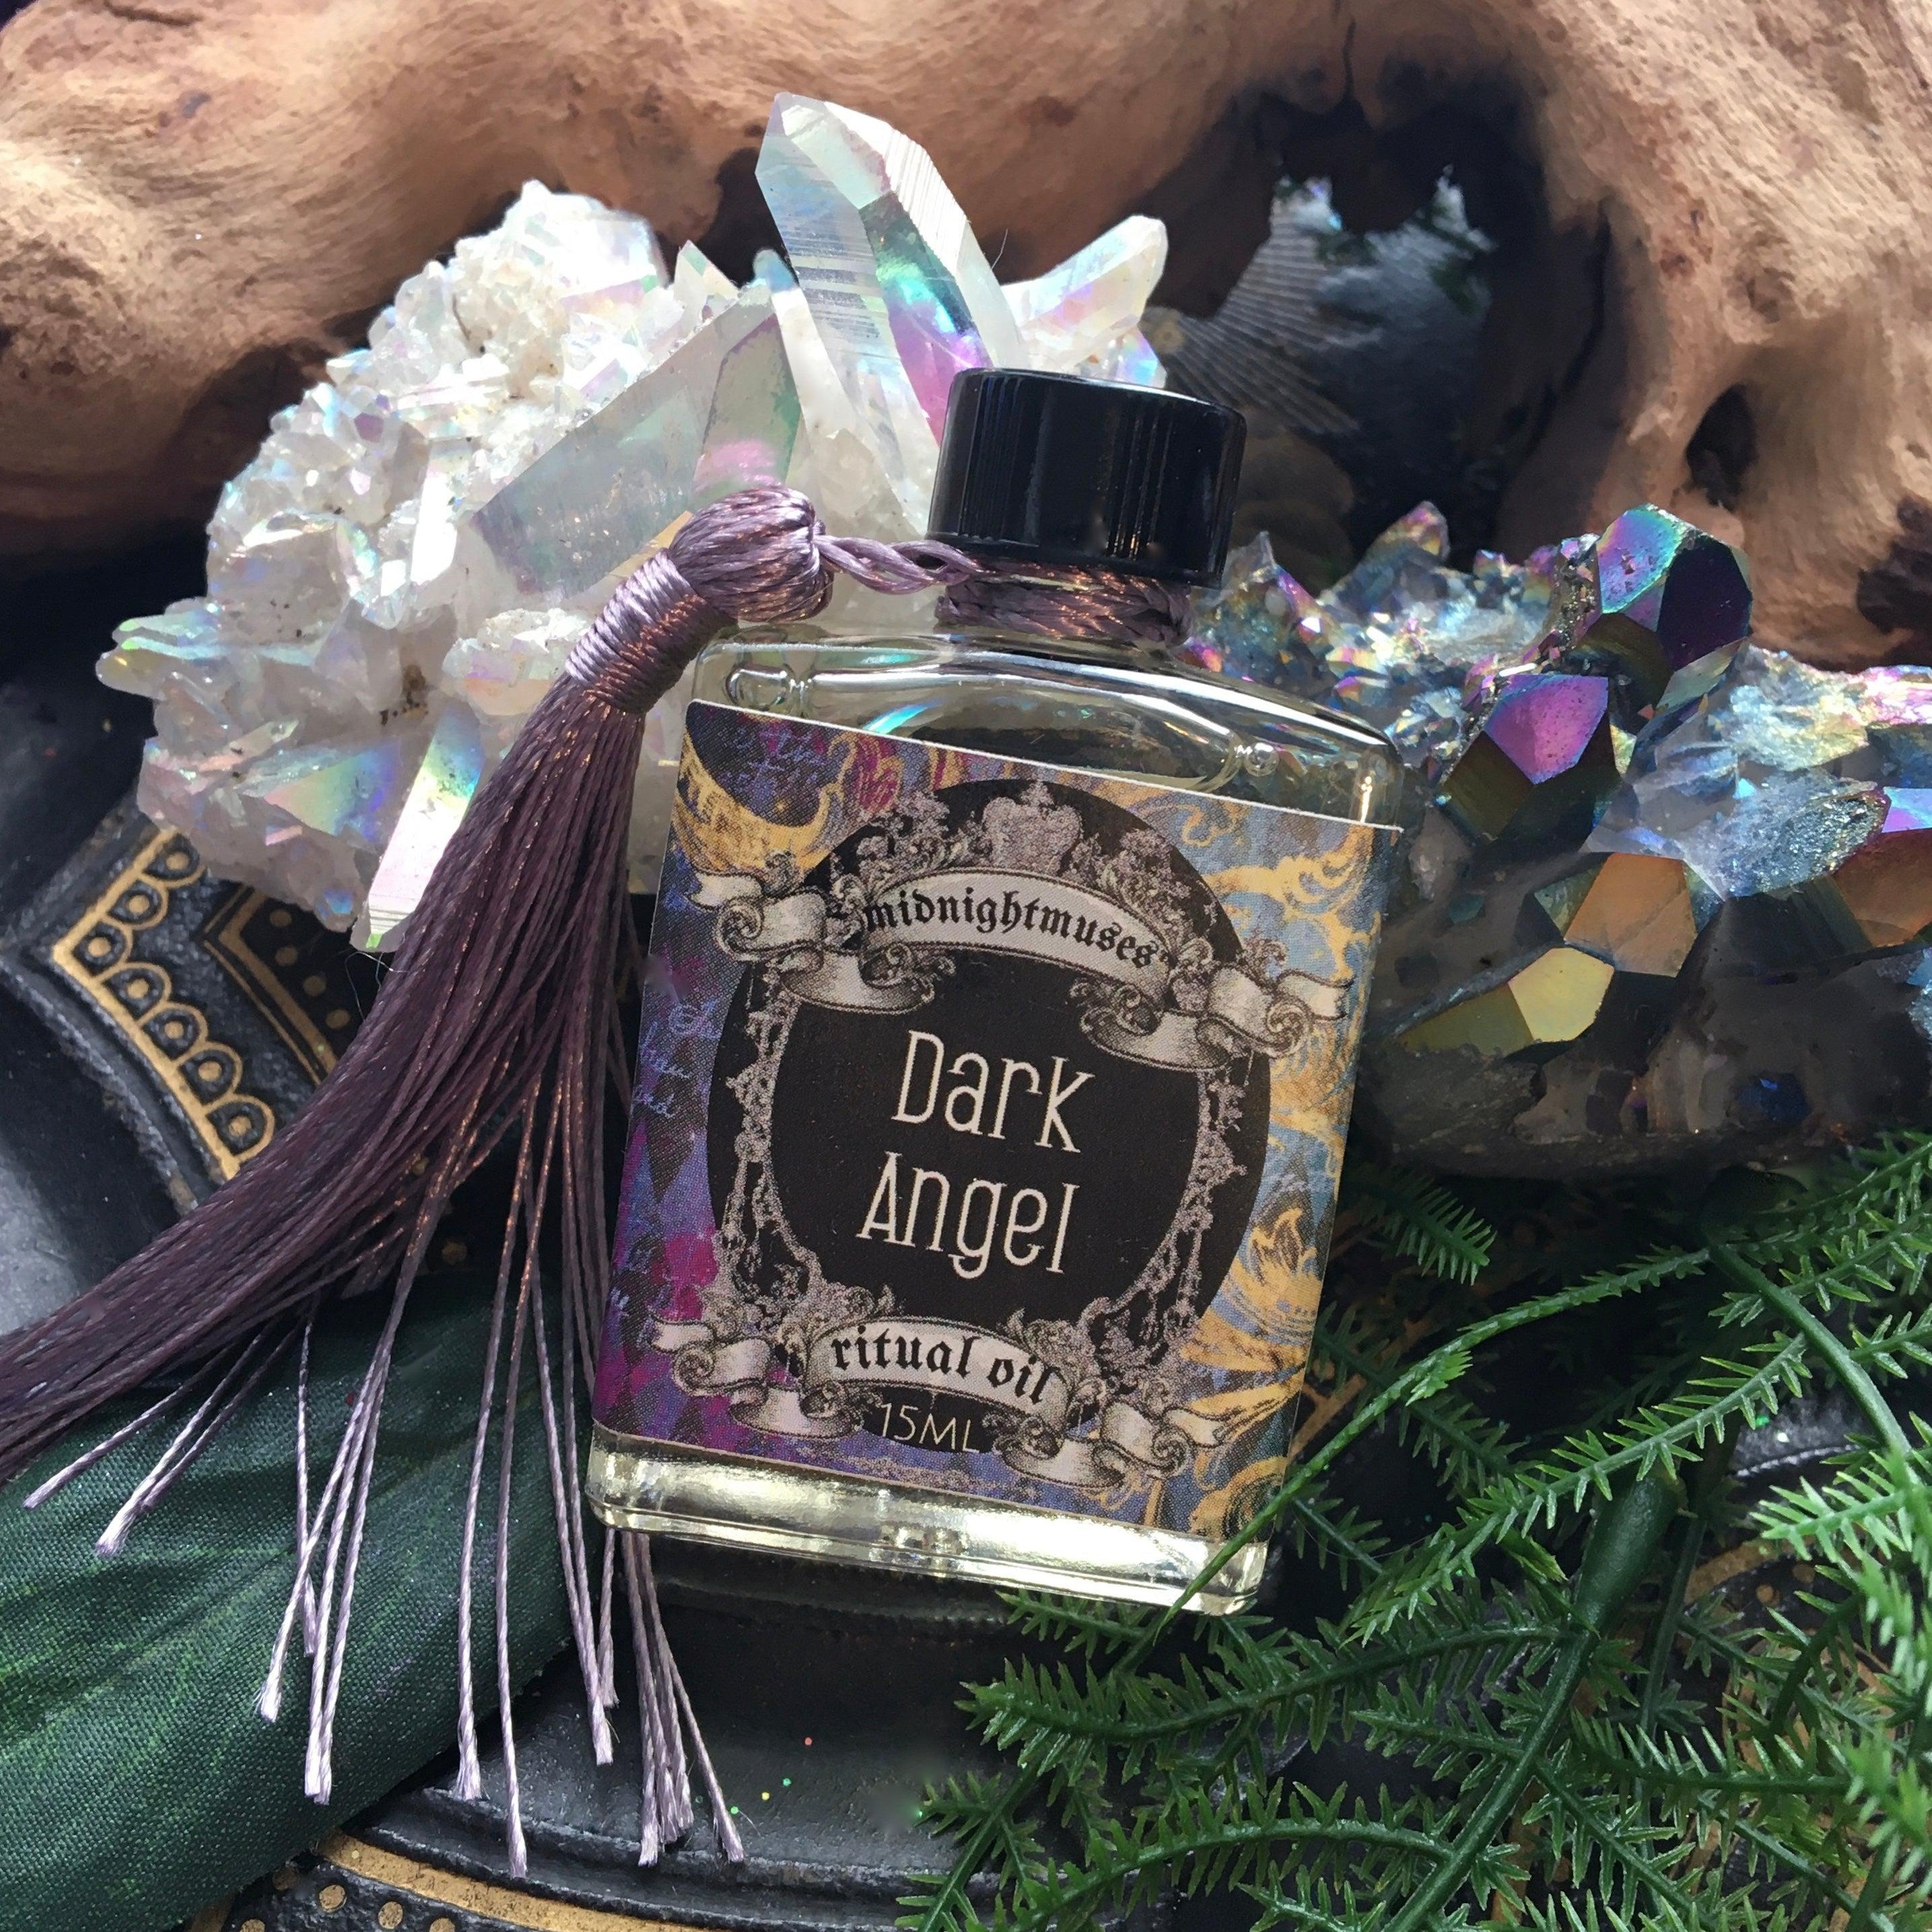 Dark Angel Ritual Oil, natural perfume oil - SugarMuses